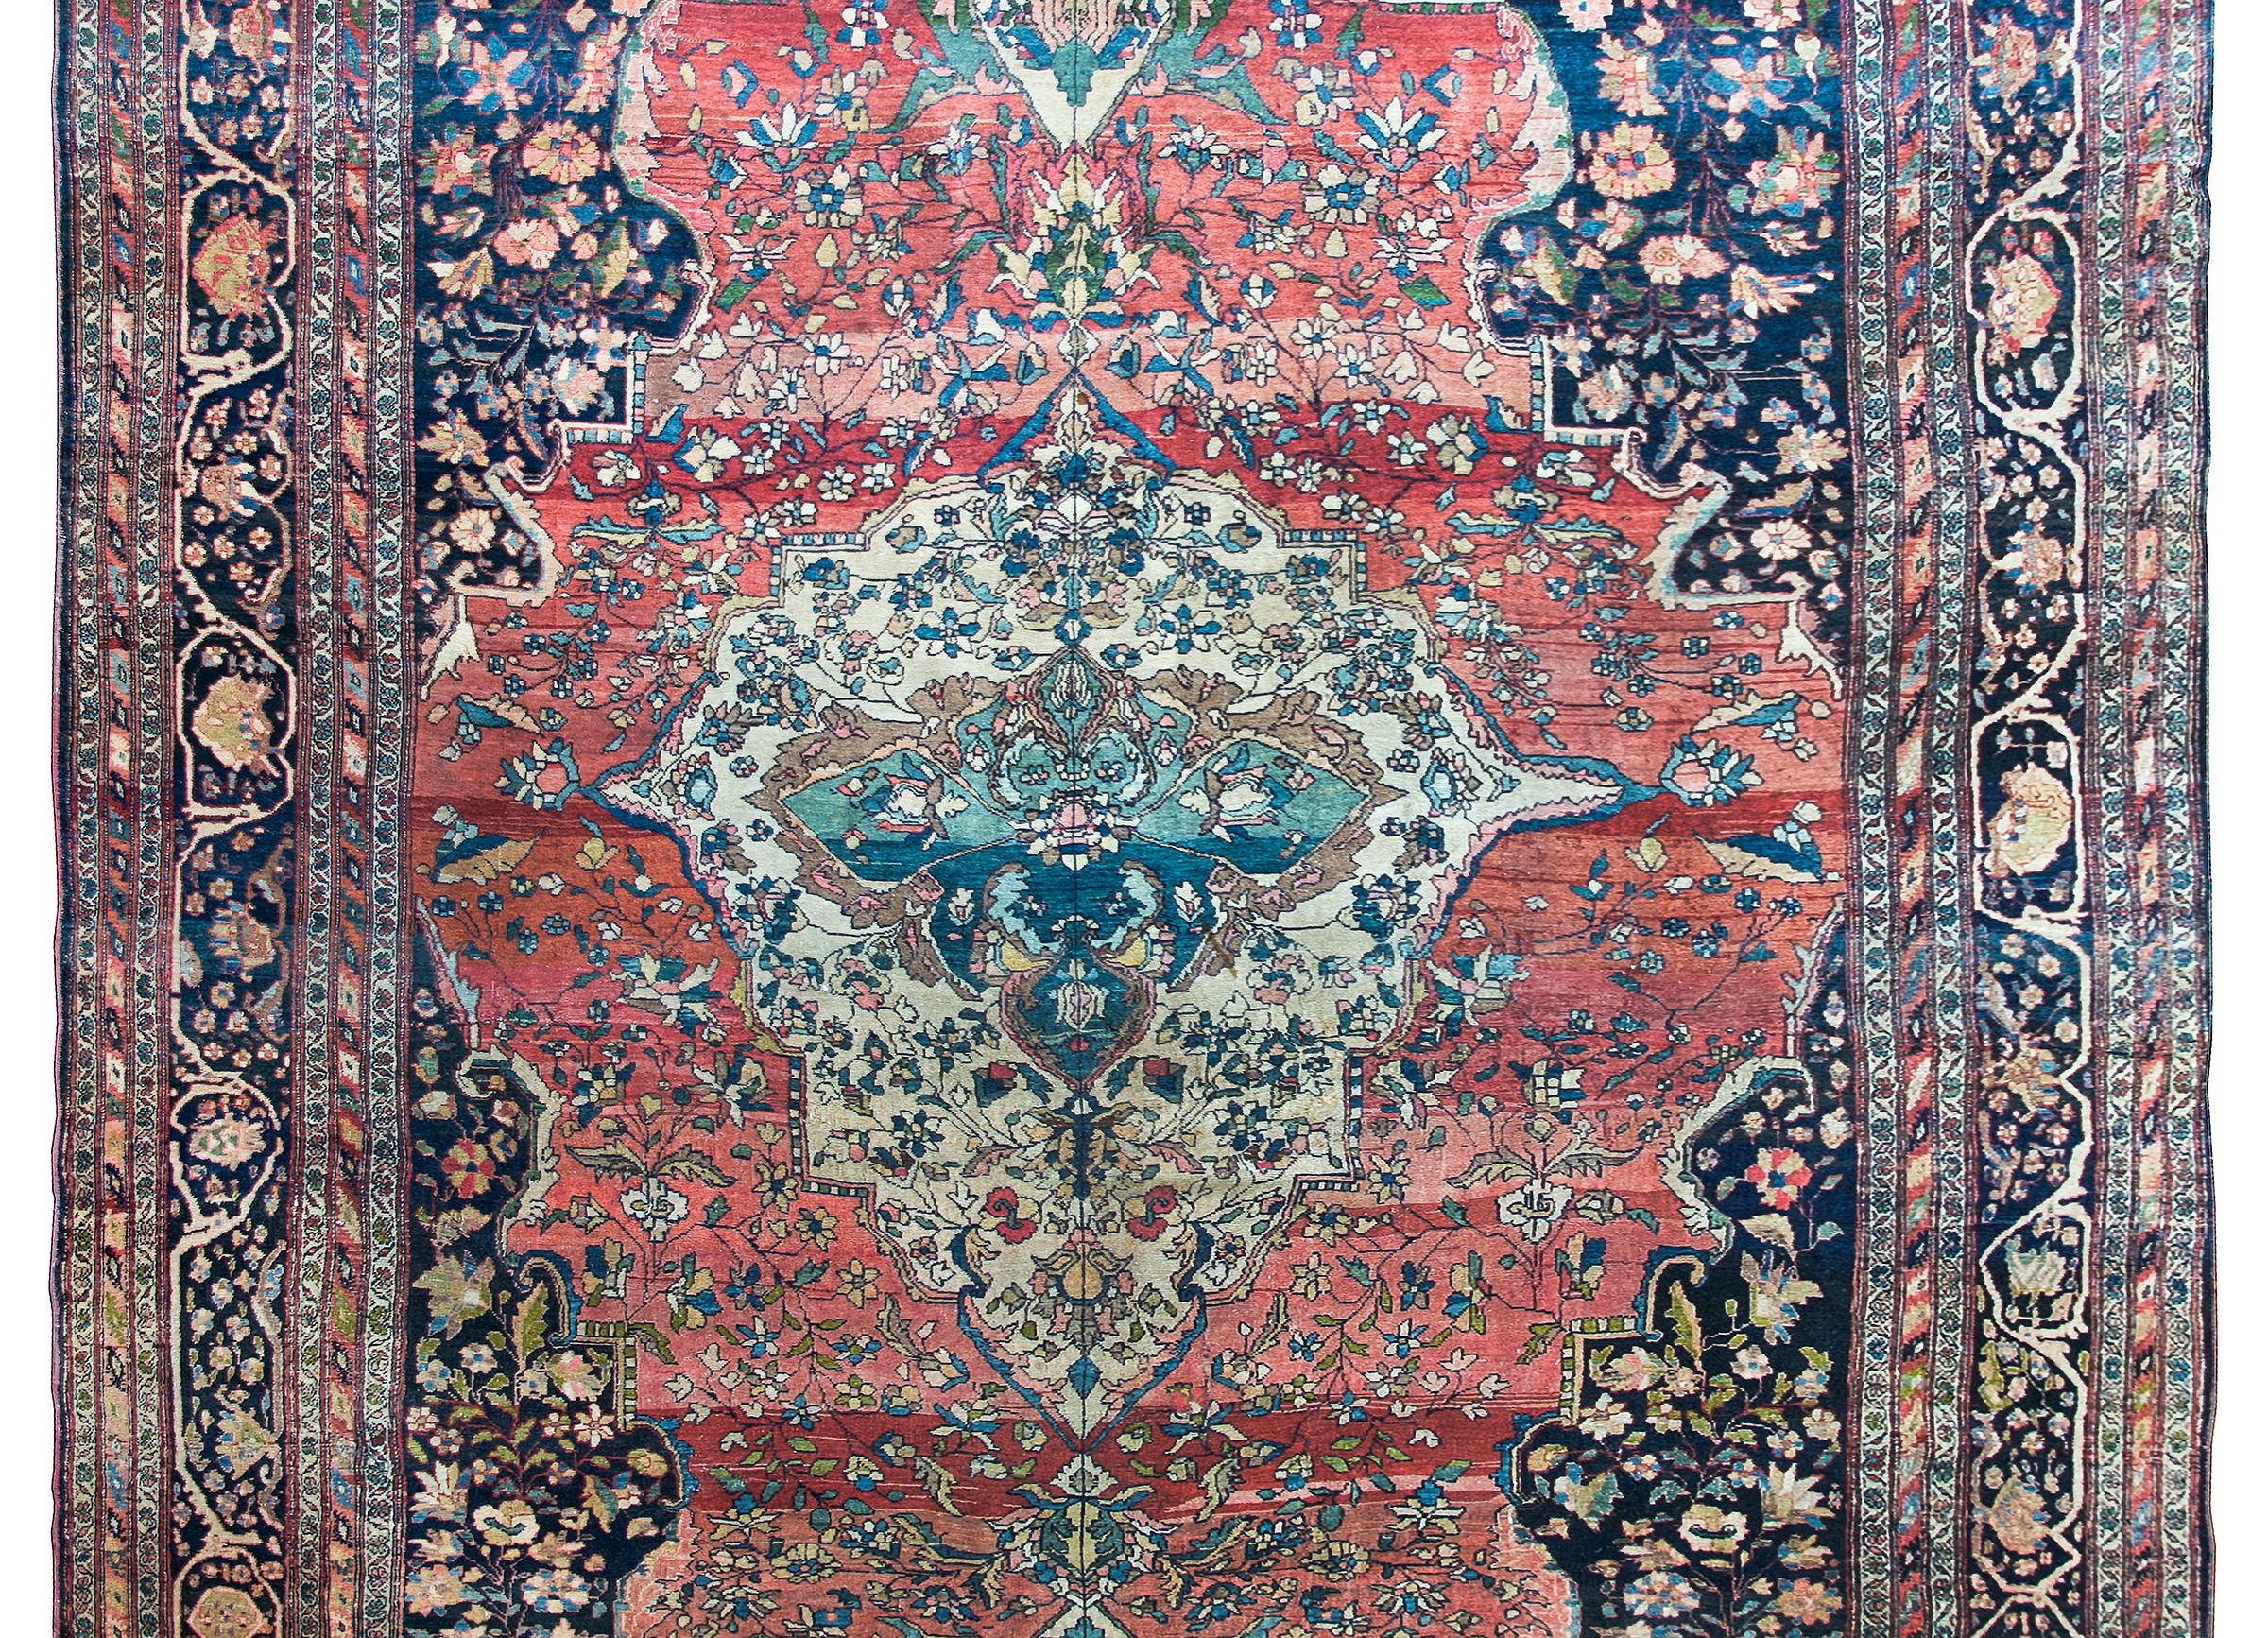 Incroyable tapis persan Sarouk Farahan de la fin du XIXe siècle, avec un grand médaillon floral central asymétrique sur fond abrash indigo et une myriade de fleurs stylisées et de vignes en volutes sur fond abrash cramoisi, entouré d'une bordure